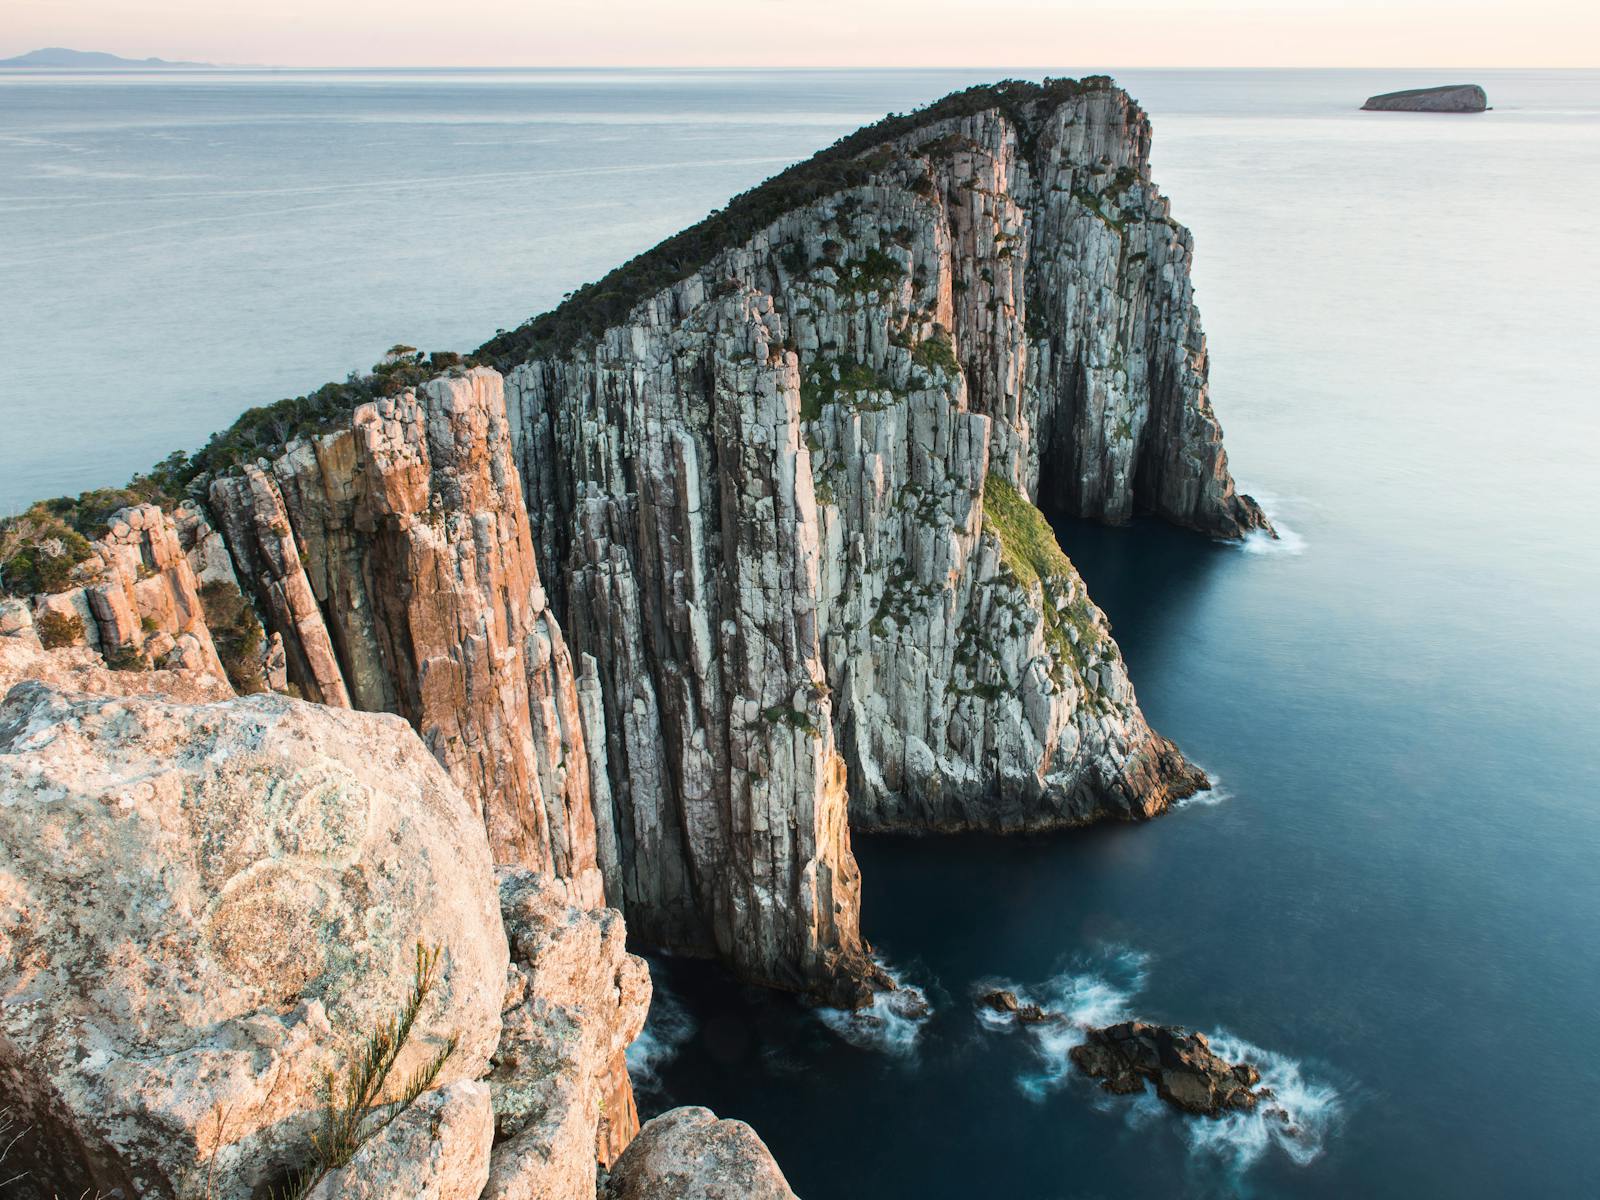 The spectacular dolerite cliffs of Cape Hauy